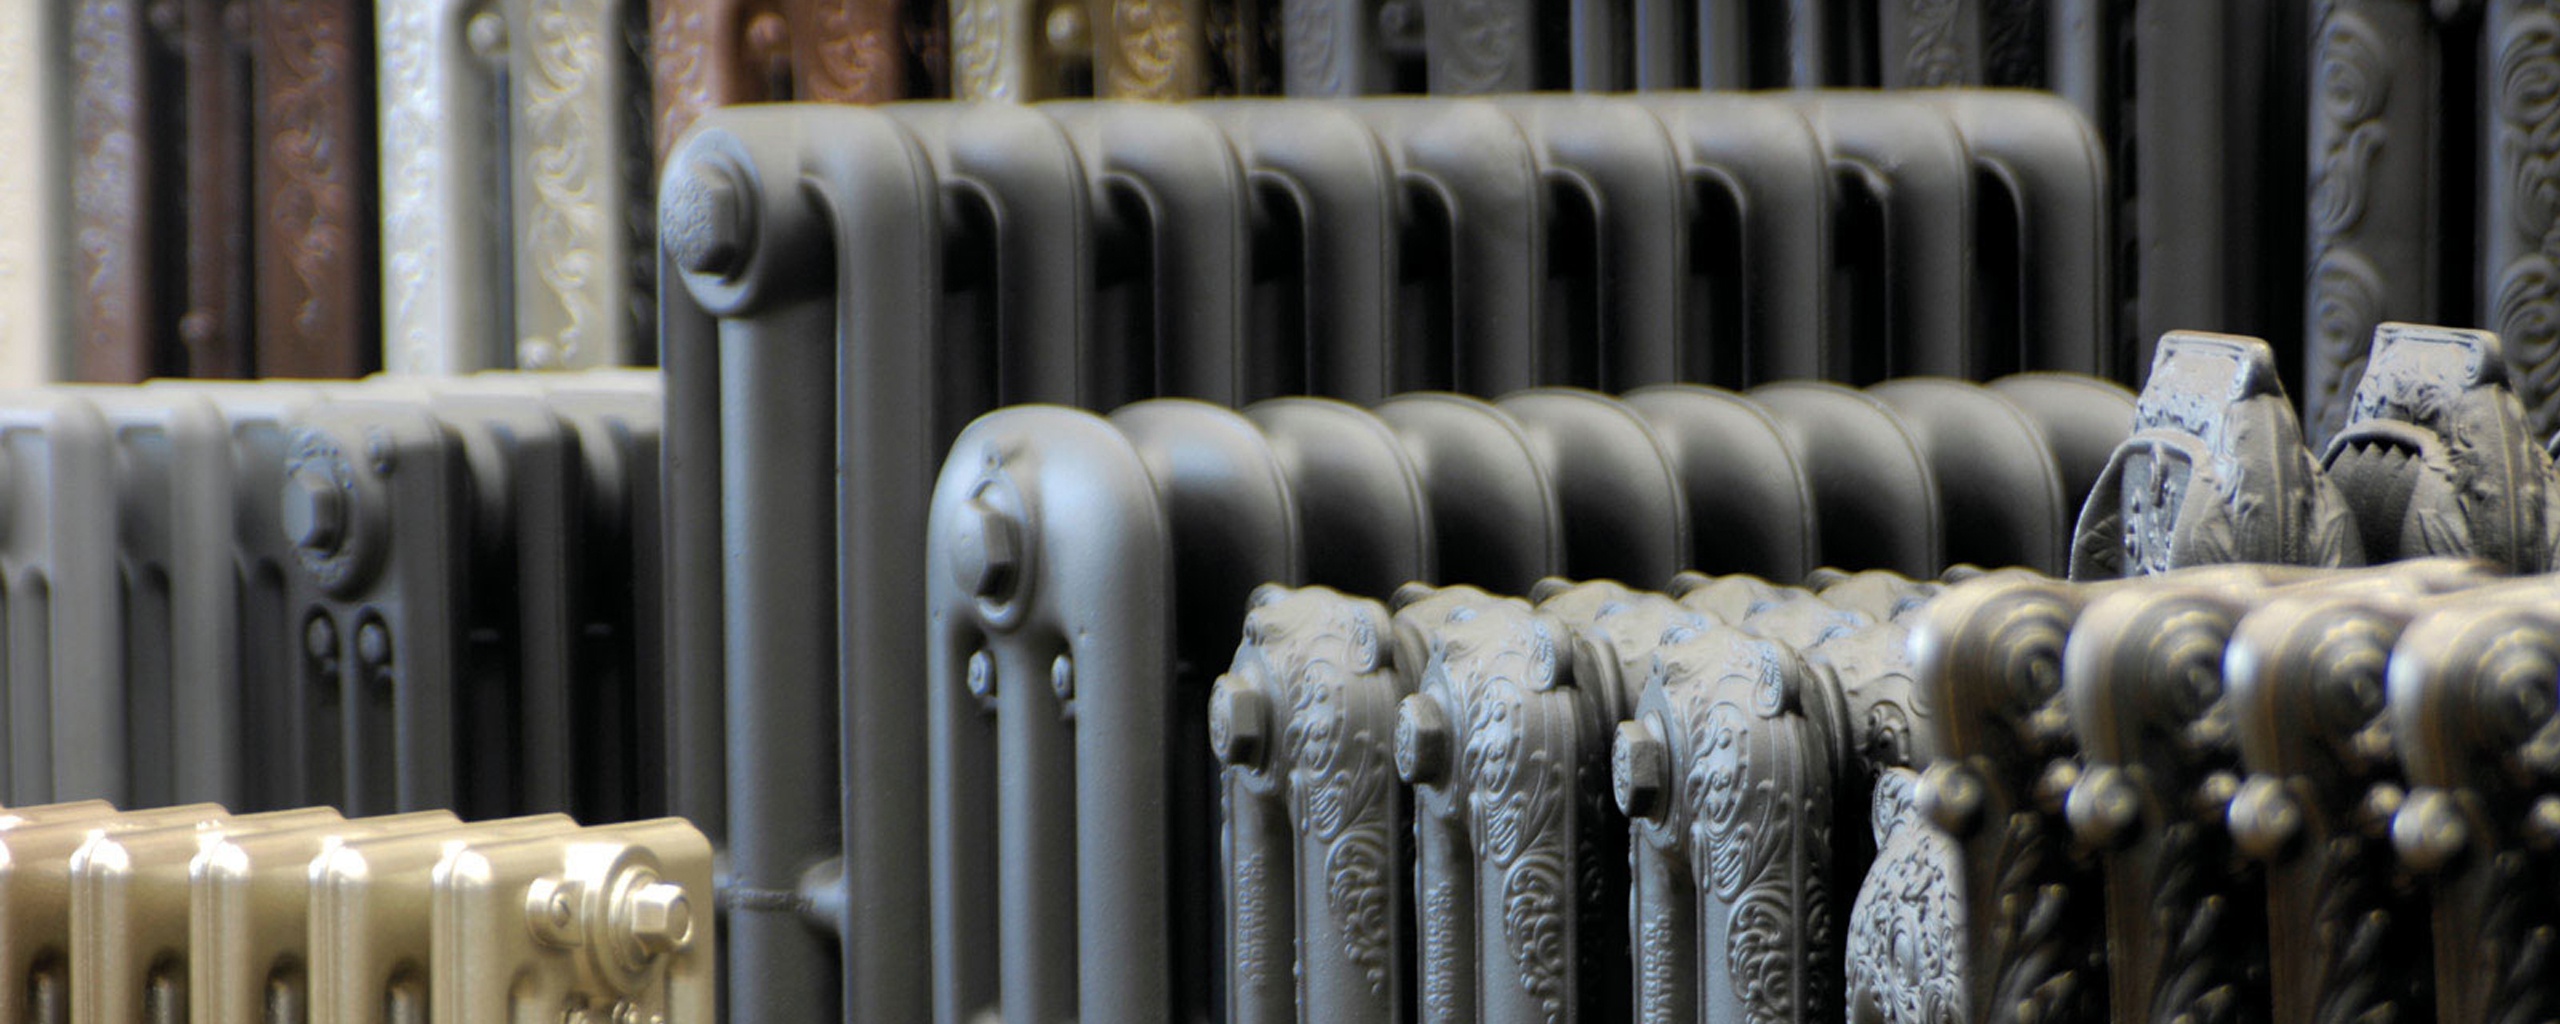 Peinture radiateur, une peinture spéciale pour appareils de chauffage